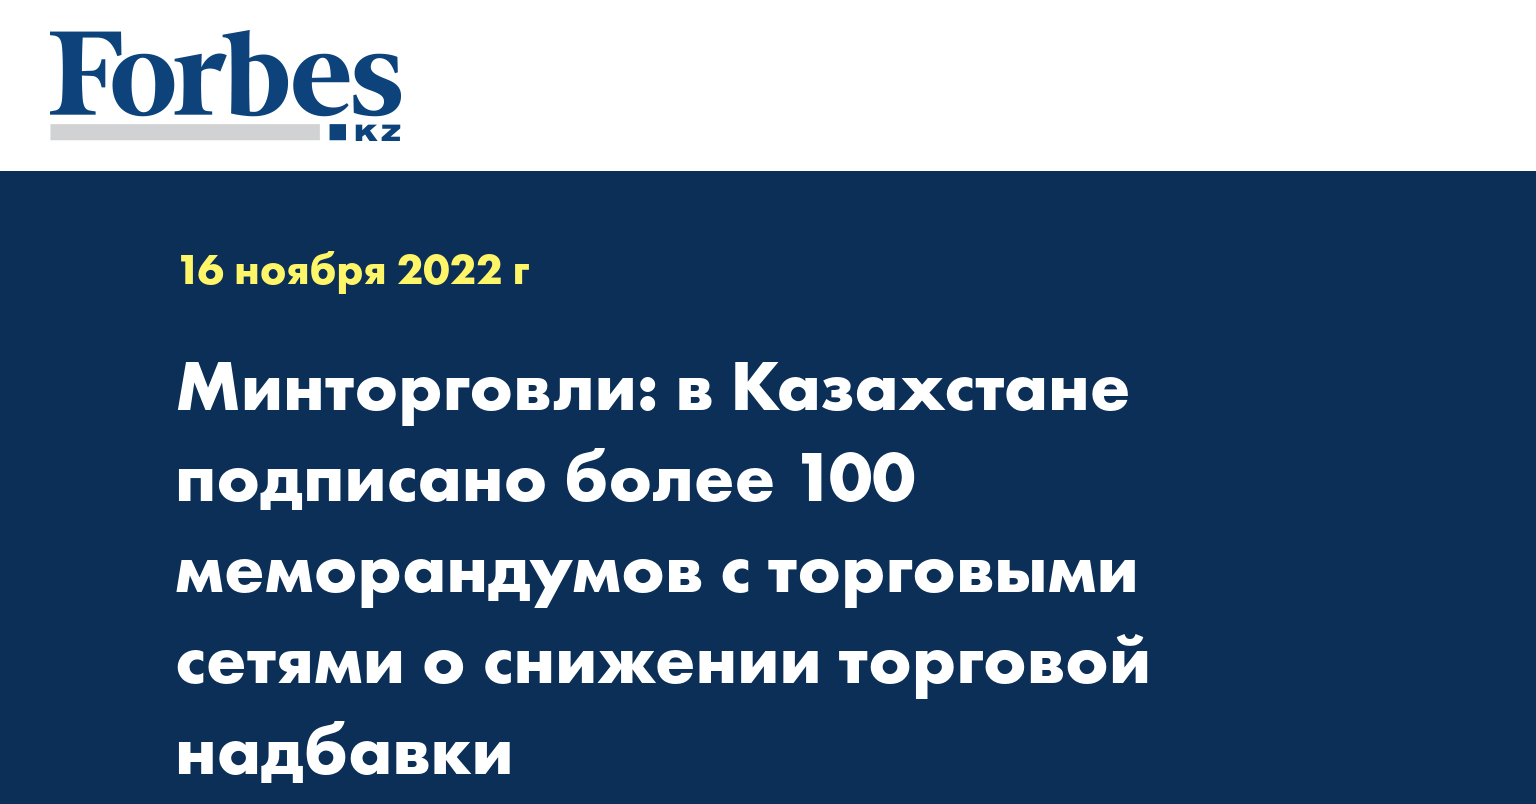 Минторговли: в Казахстане подписано более 100 меморандумов с торговыми сетями о снижении торговой надбавки